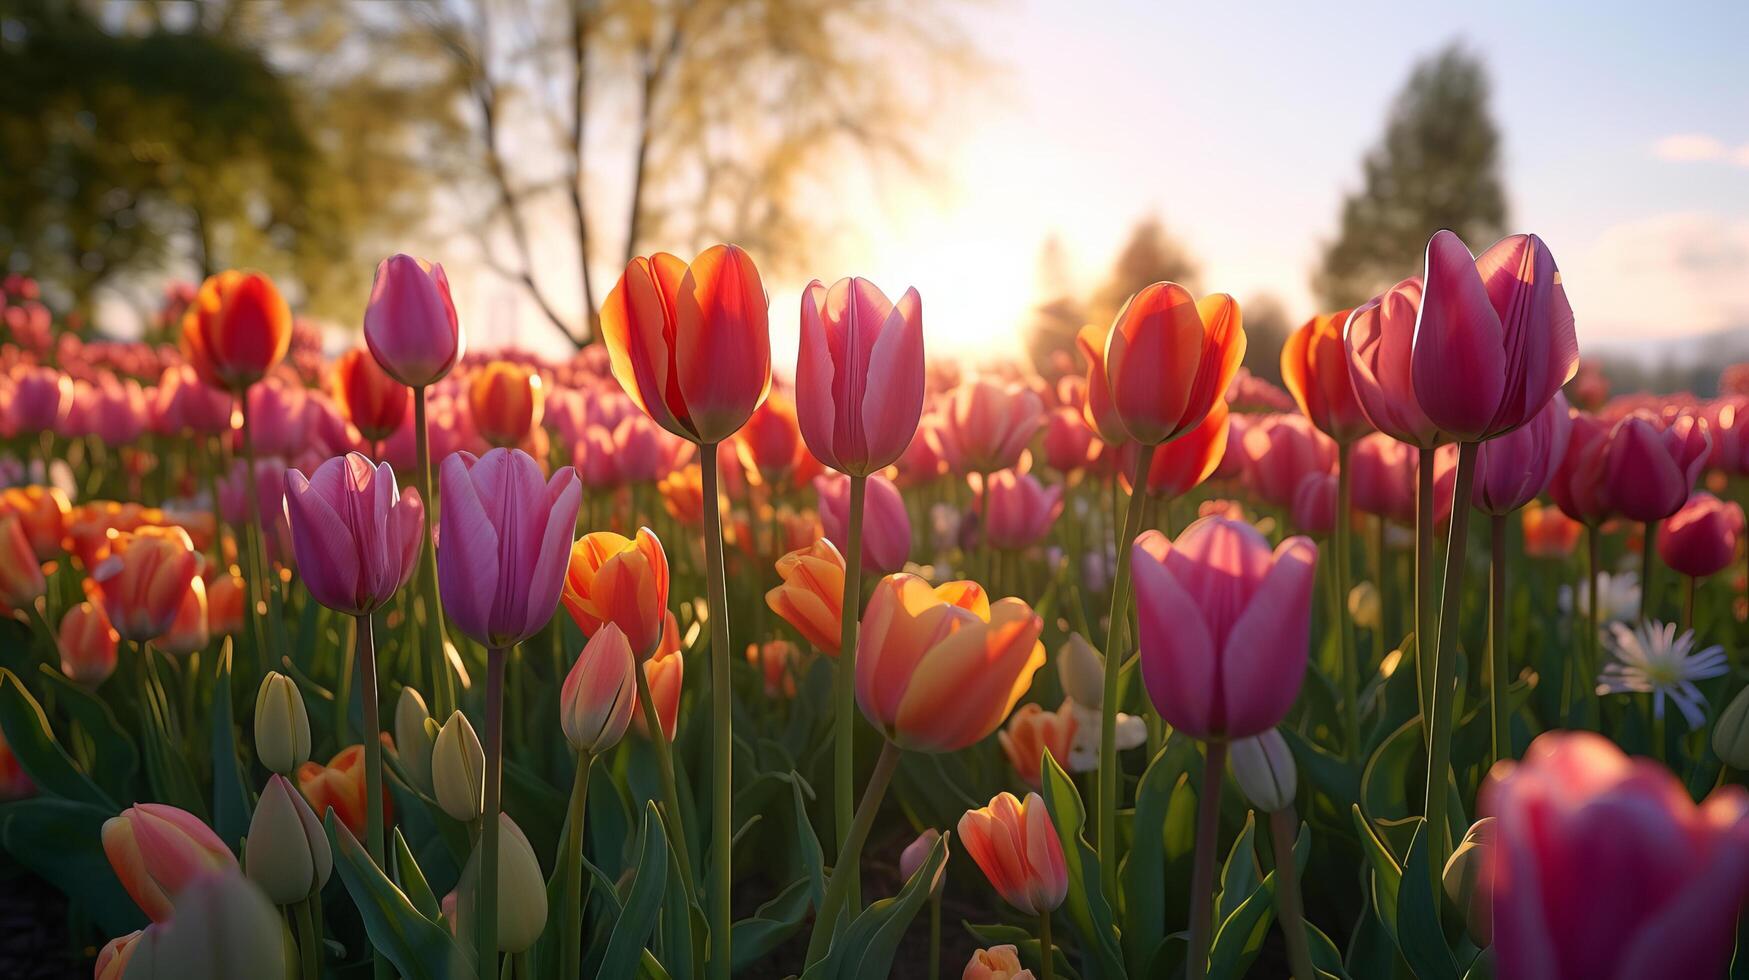 Tulips flower field. Illustration photo